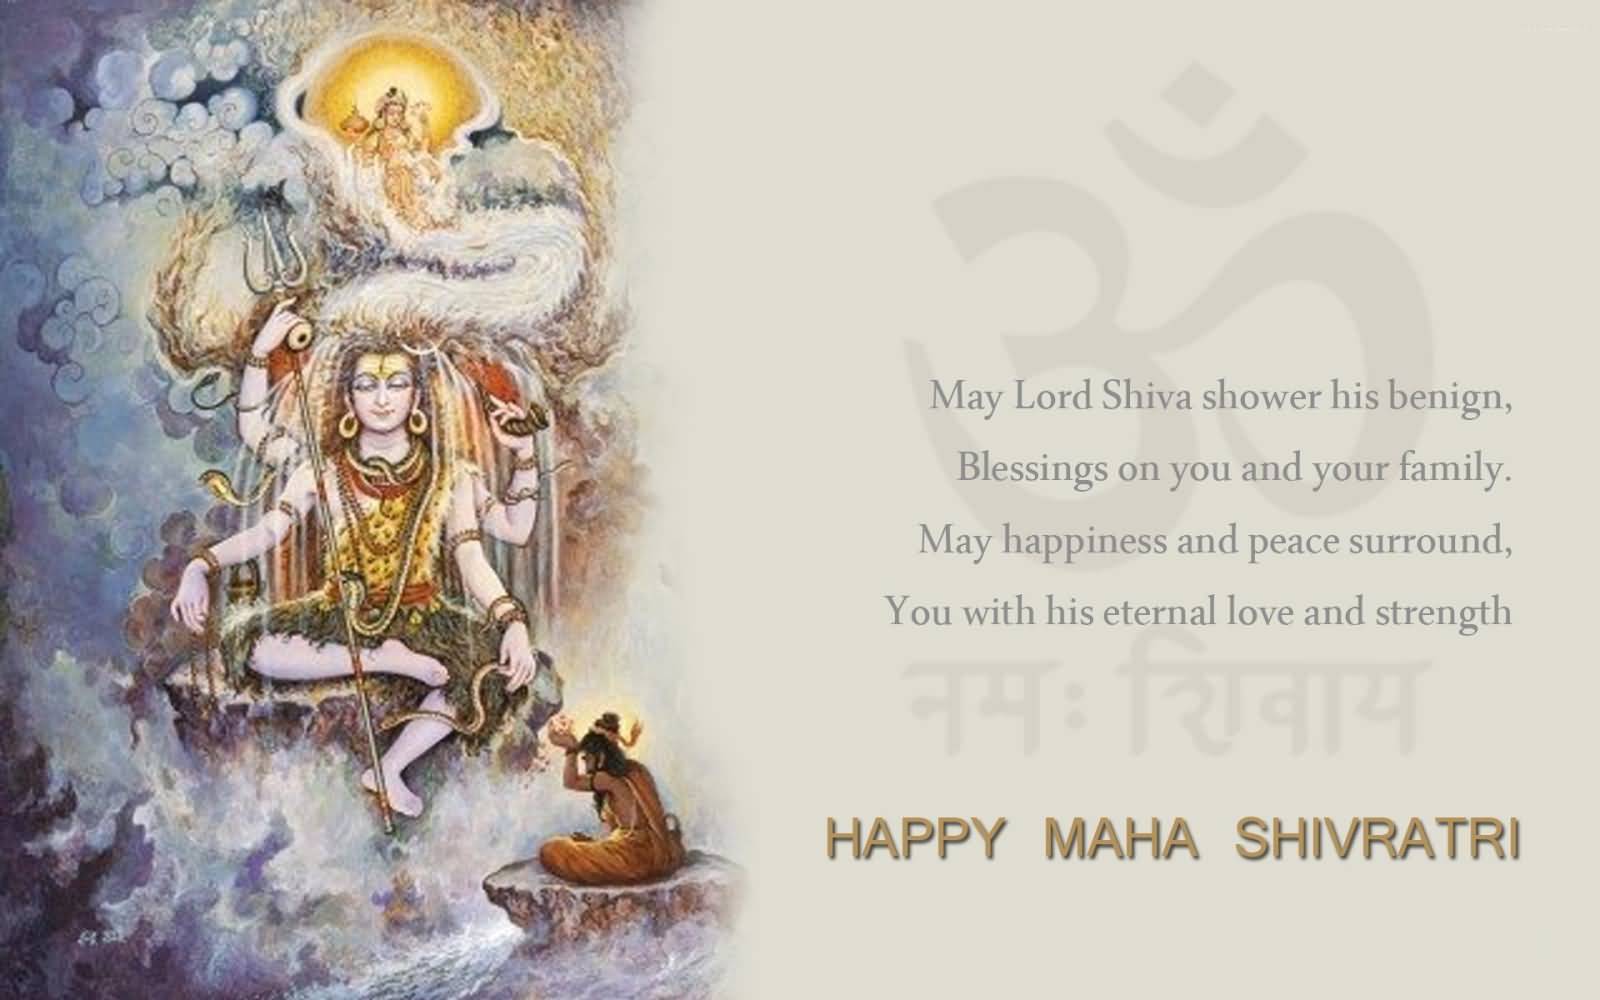 Happy Maha Shivratri - Happy Mahashivratri Hd Images Download - 1600x1000  Wallpaper 